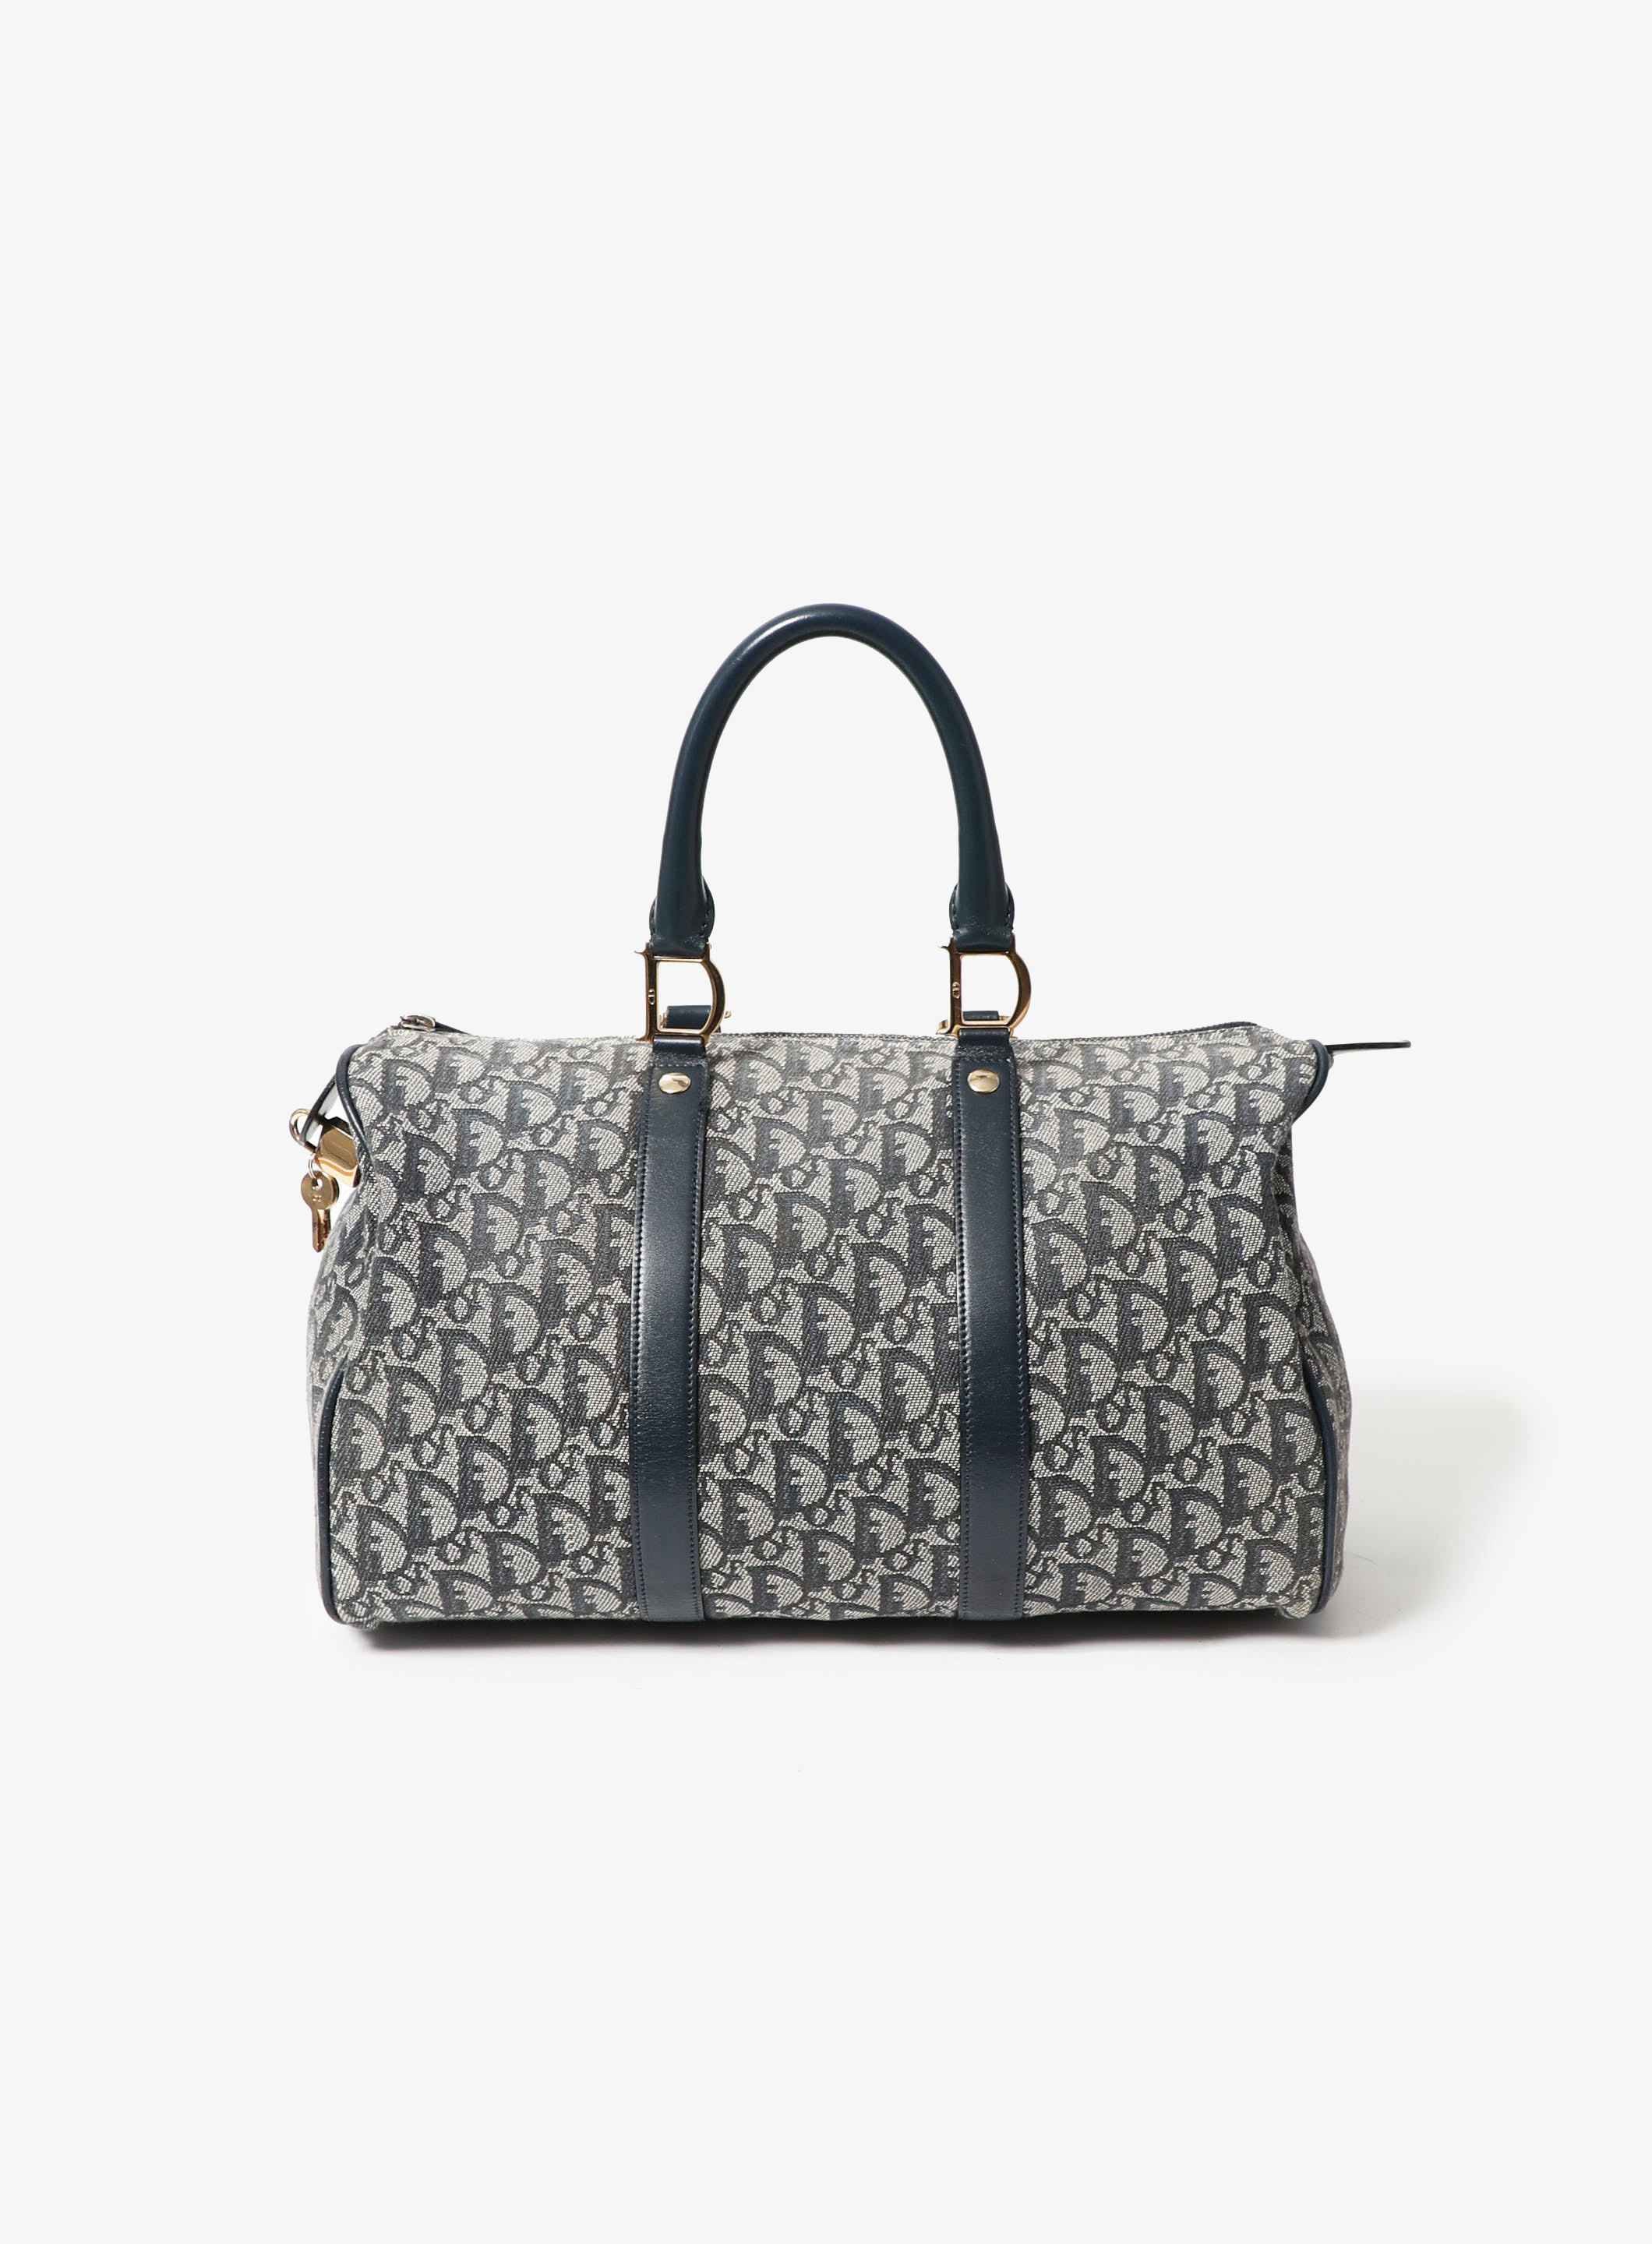 Louis Vuitton Pre-Owned Alizé 1 Poche Garment Travel Bag Monogram